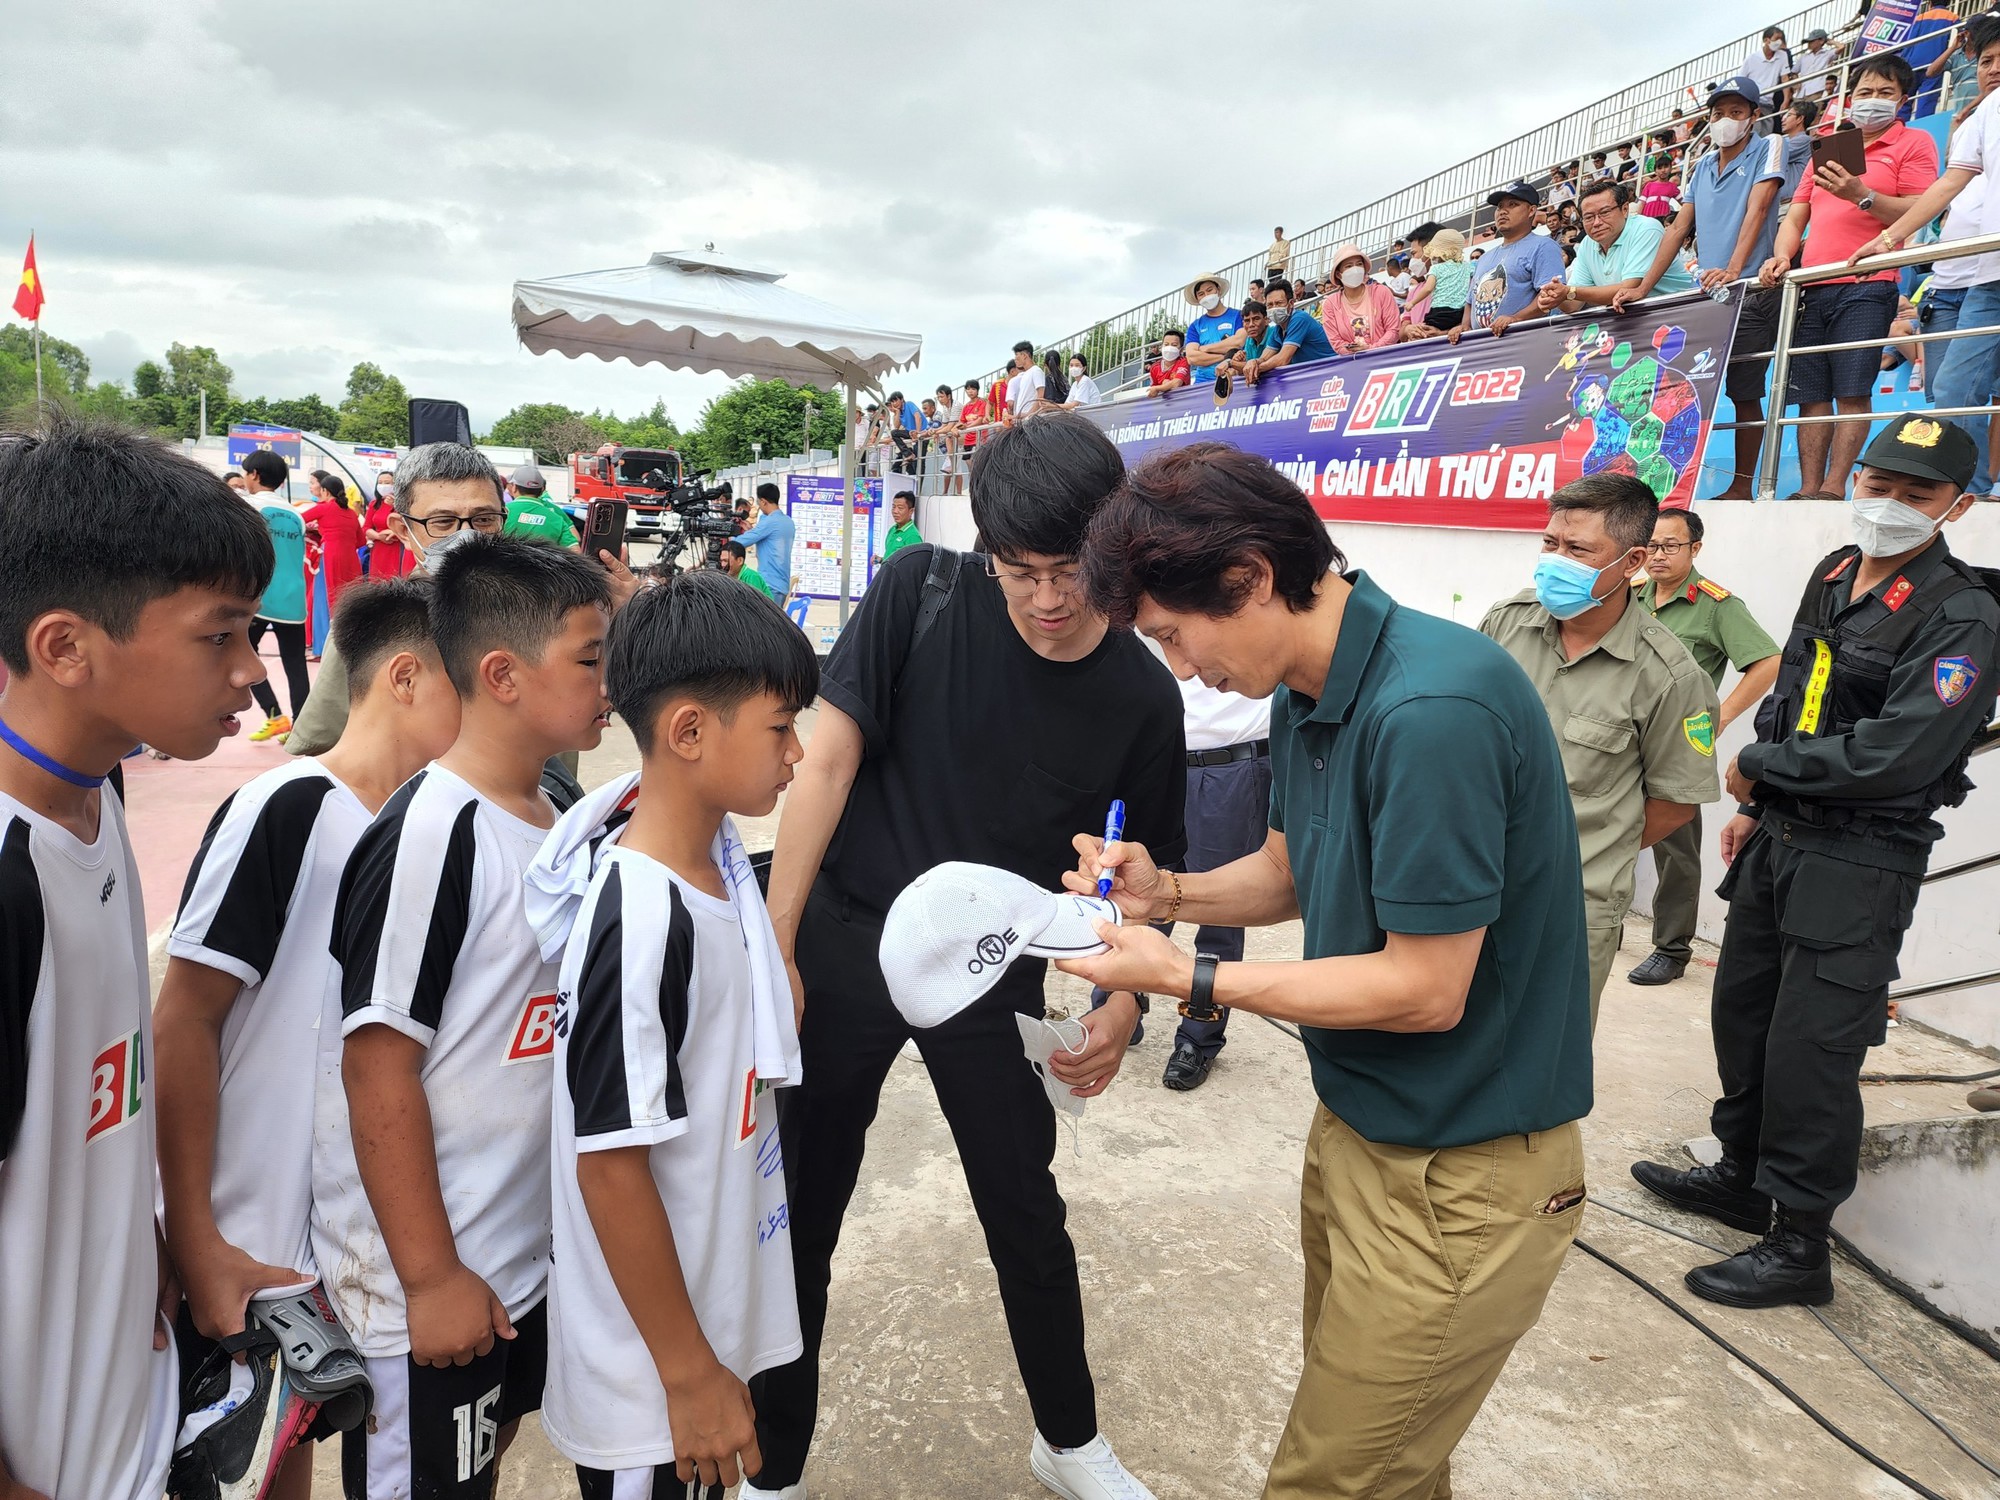 HLV Gong Oh-kyun đến ủng hộ các em nhỏ ở giải bóng đá thiếu niên nhi đồng Cúp TH BRT 2022